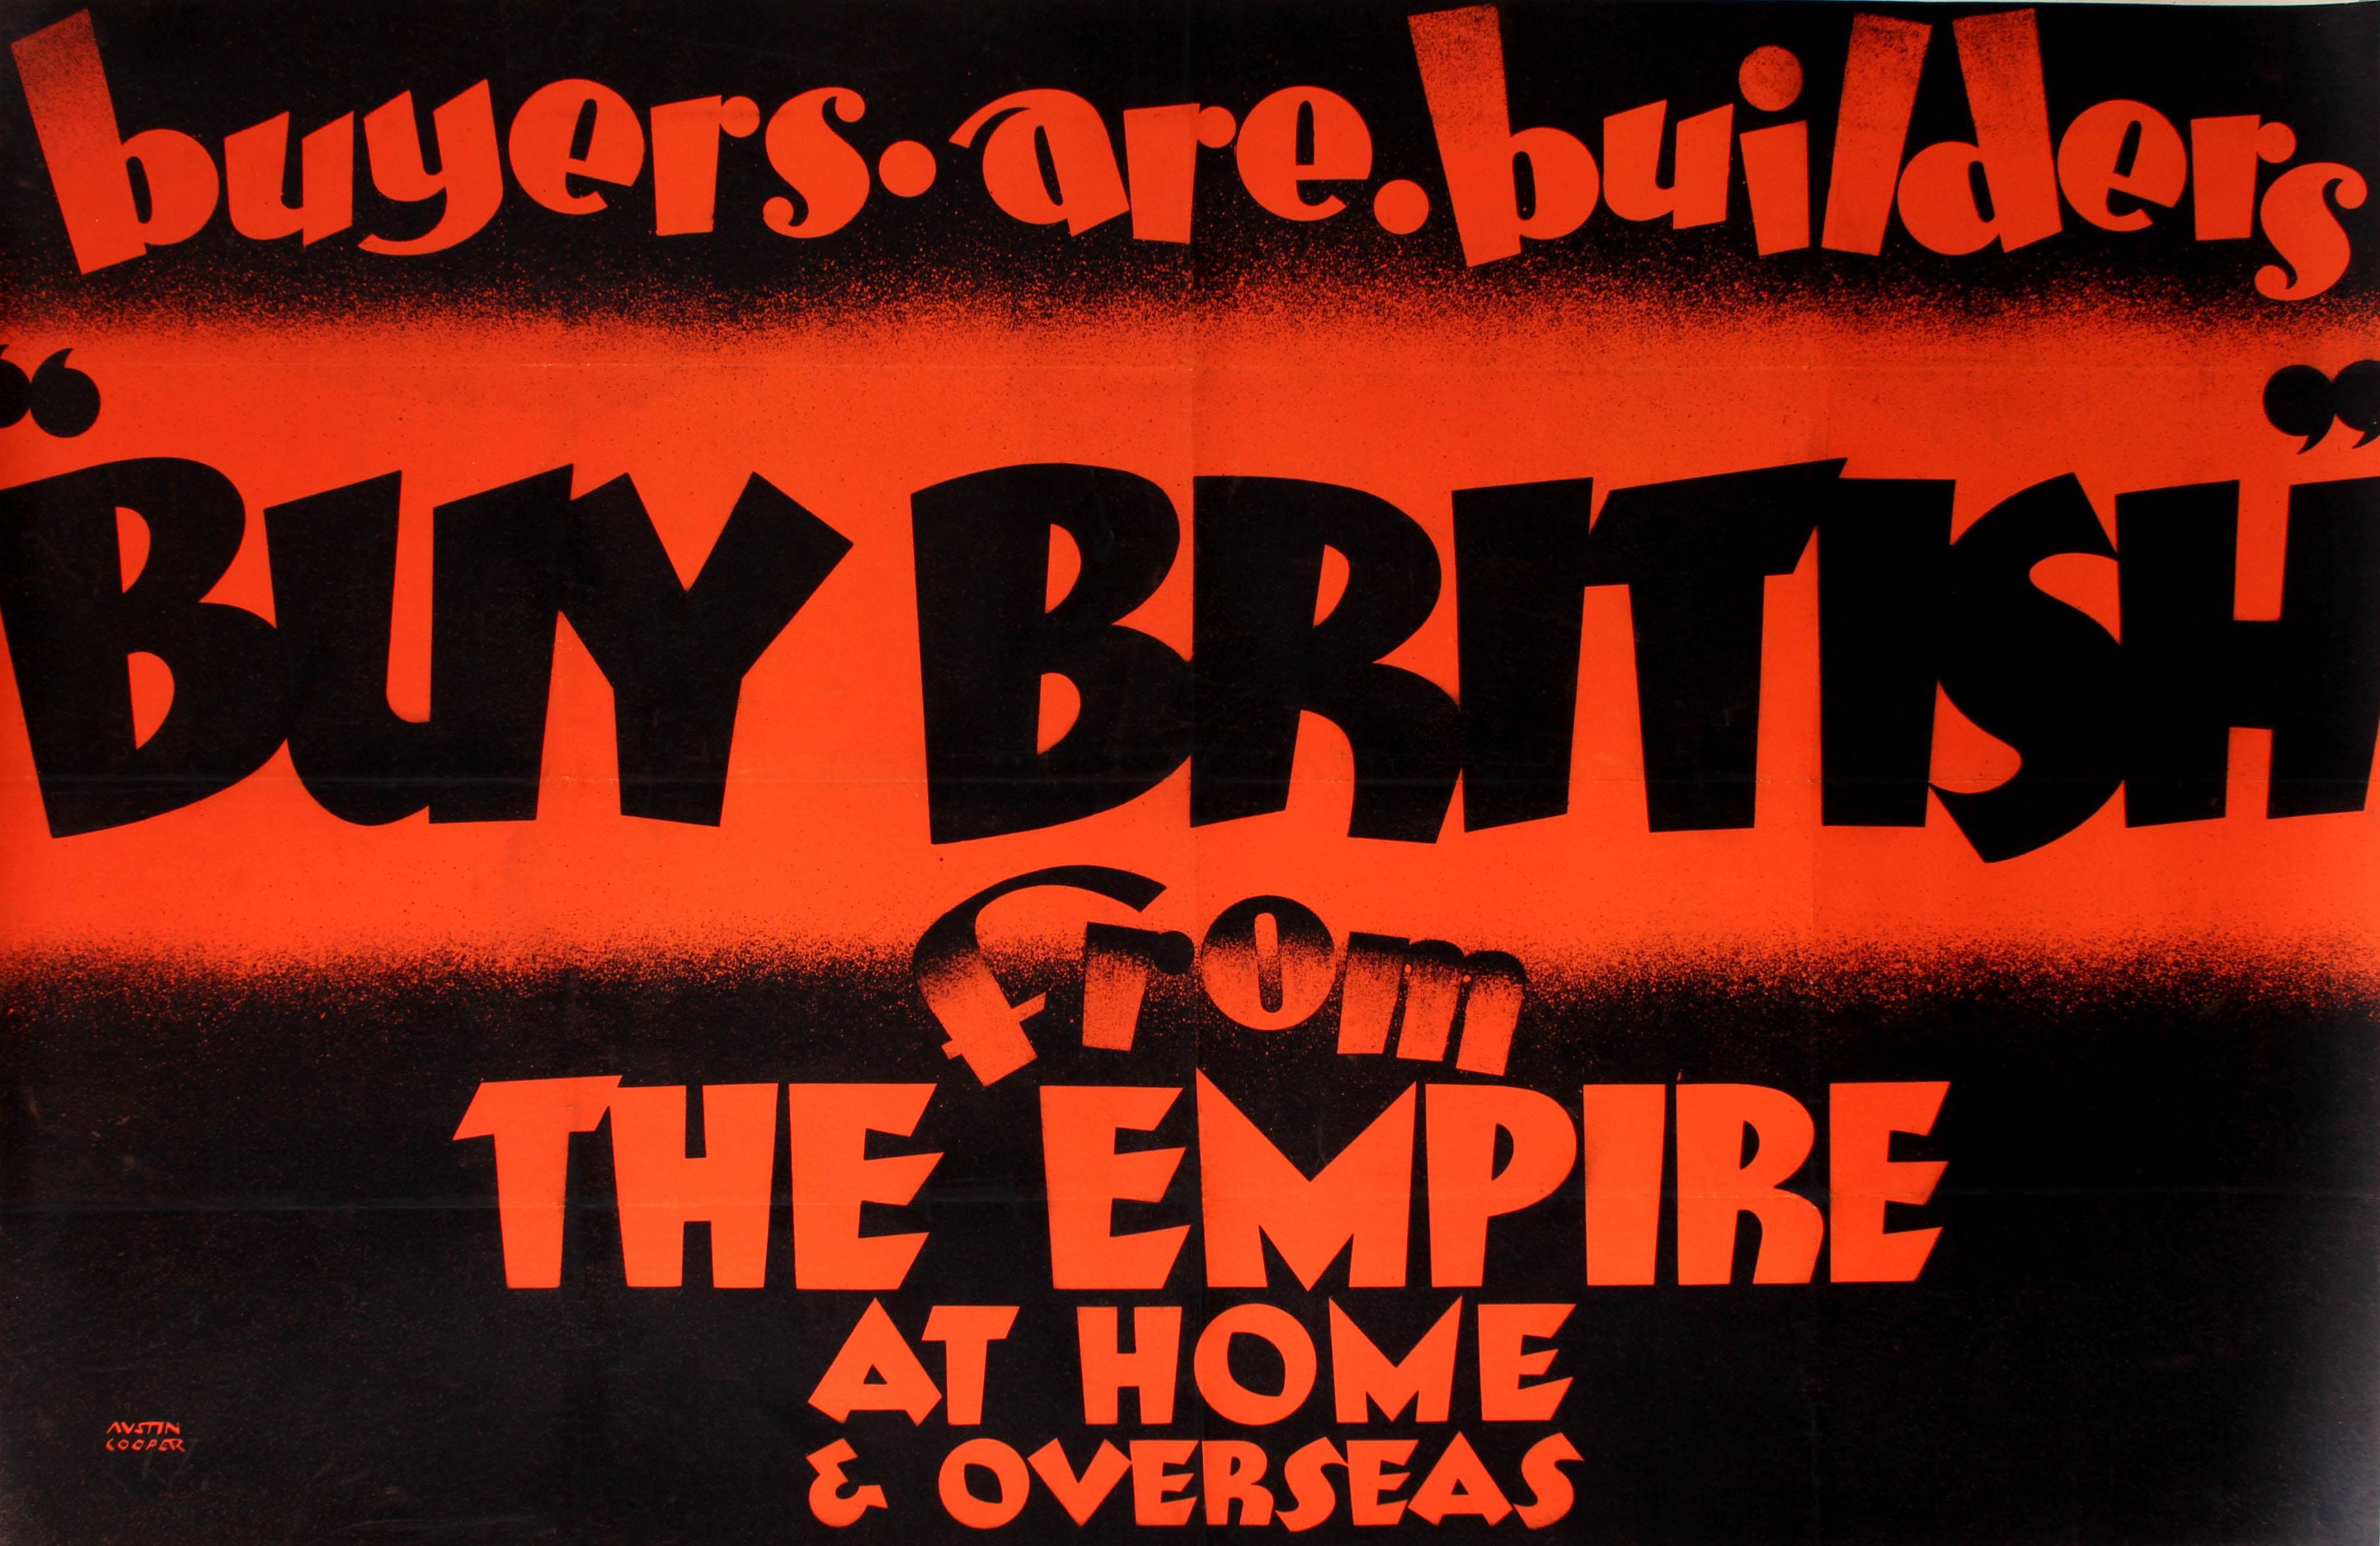 Original-Werbeplakat, das vom Empire Marketing Board herausgegeben wurde, um die britischen Bürger zu ermutigen, ihre eigene Wirtschaft nach der Großen Depression in Amerika durch den Kauf britischer Waren zu unterstützen. Großartiges Design von